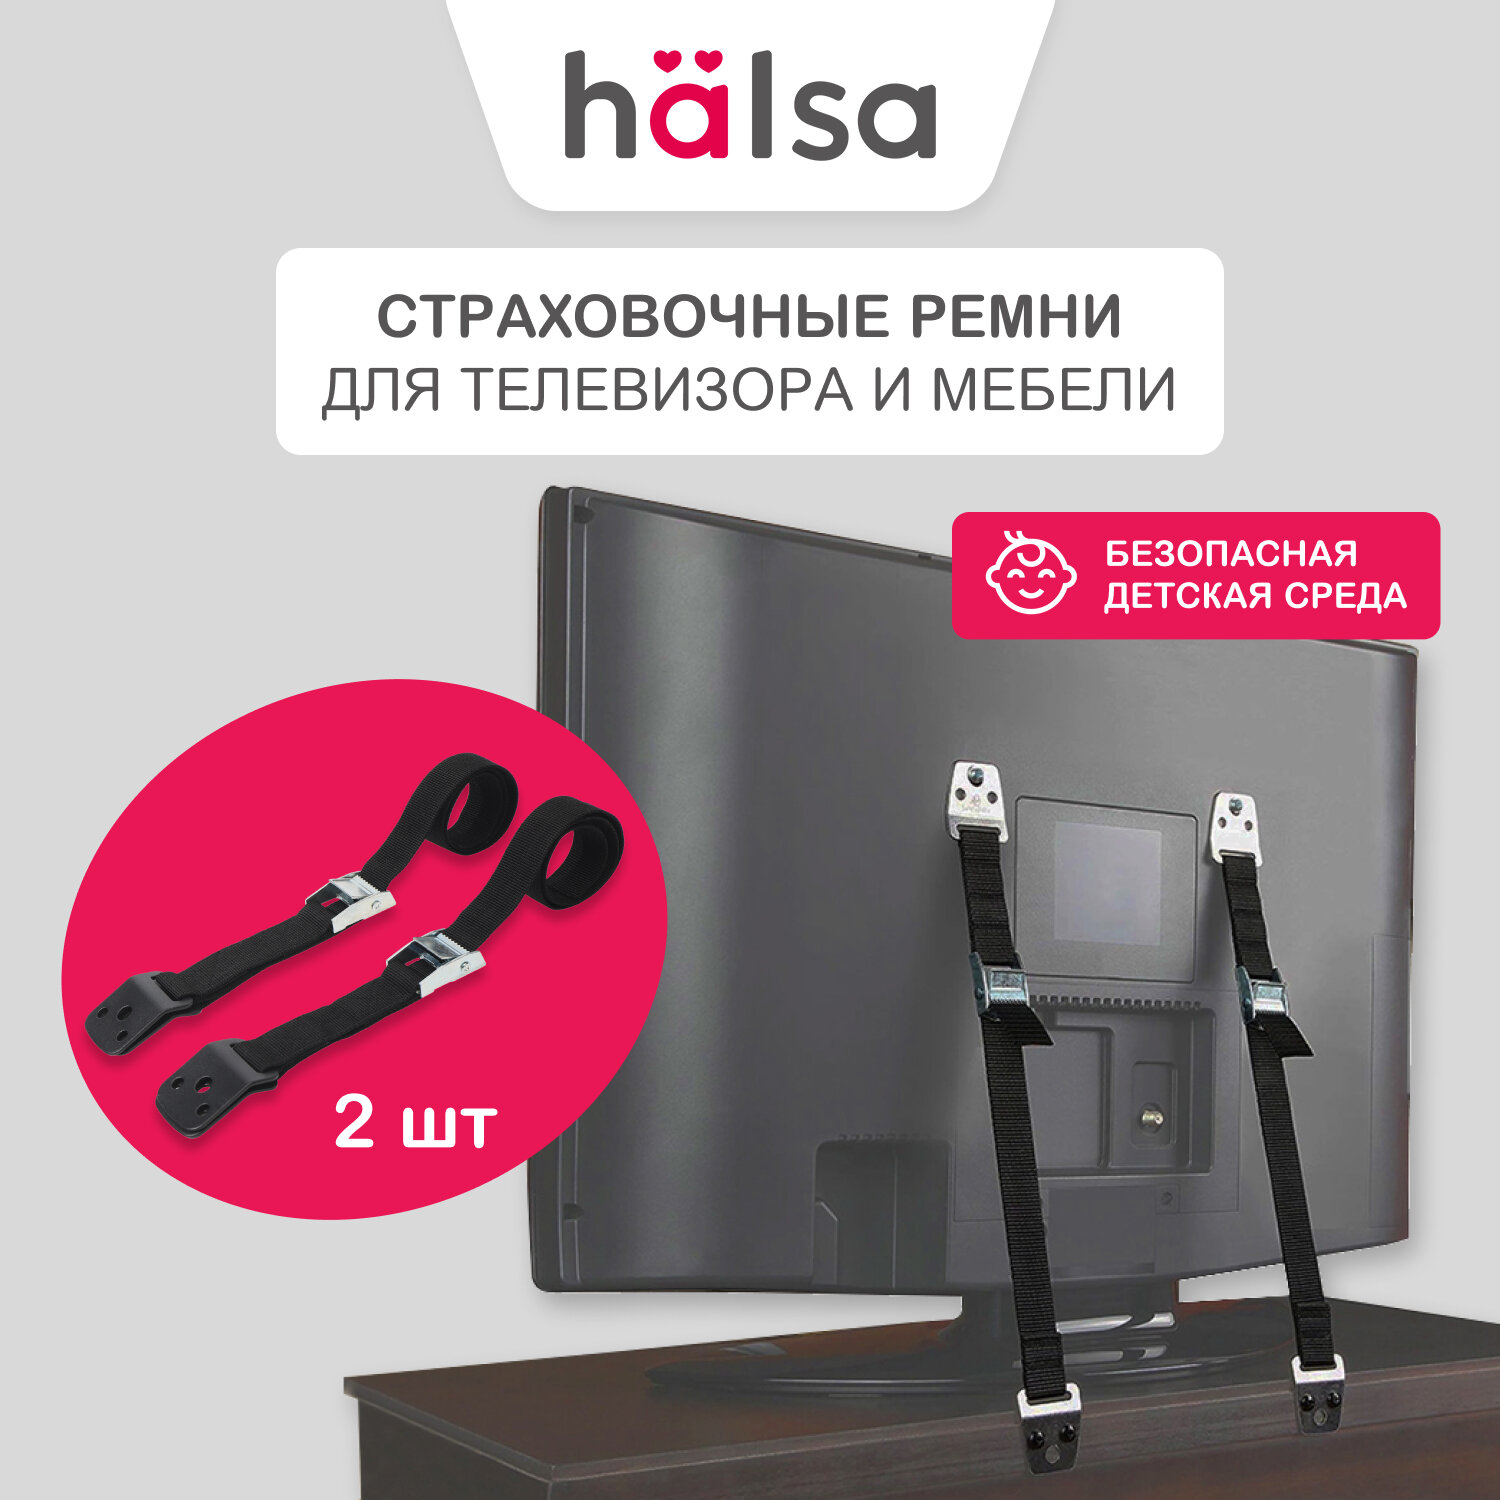 Страховочные регулируемые ремни для телевизора и мебели HALSA в комплекте с креплением, 70 см